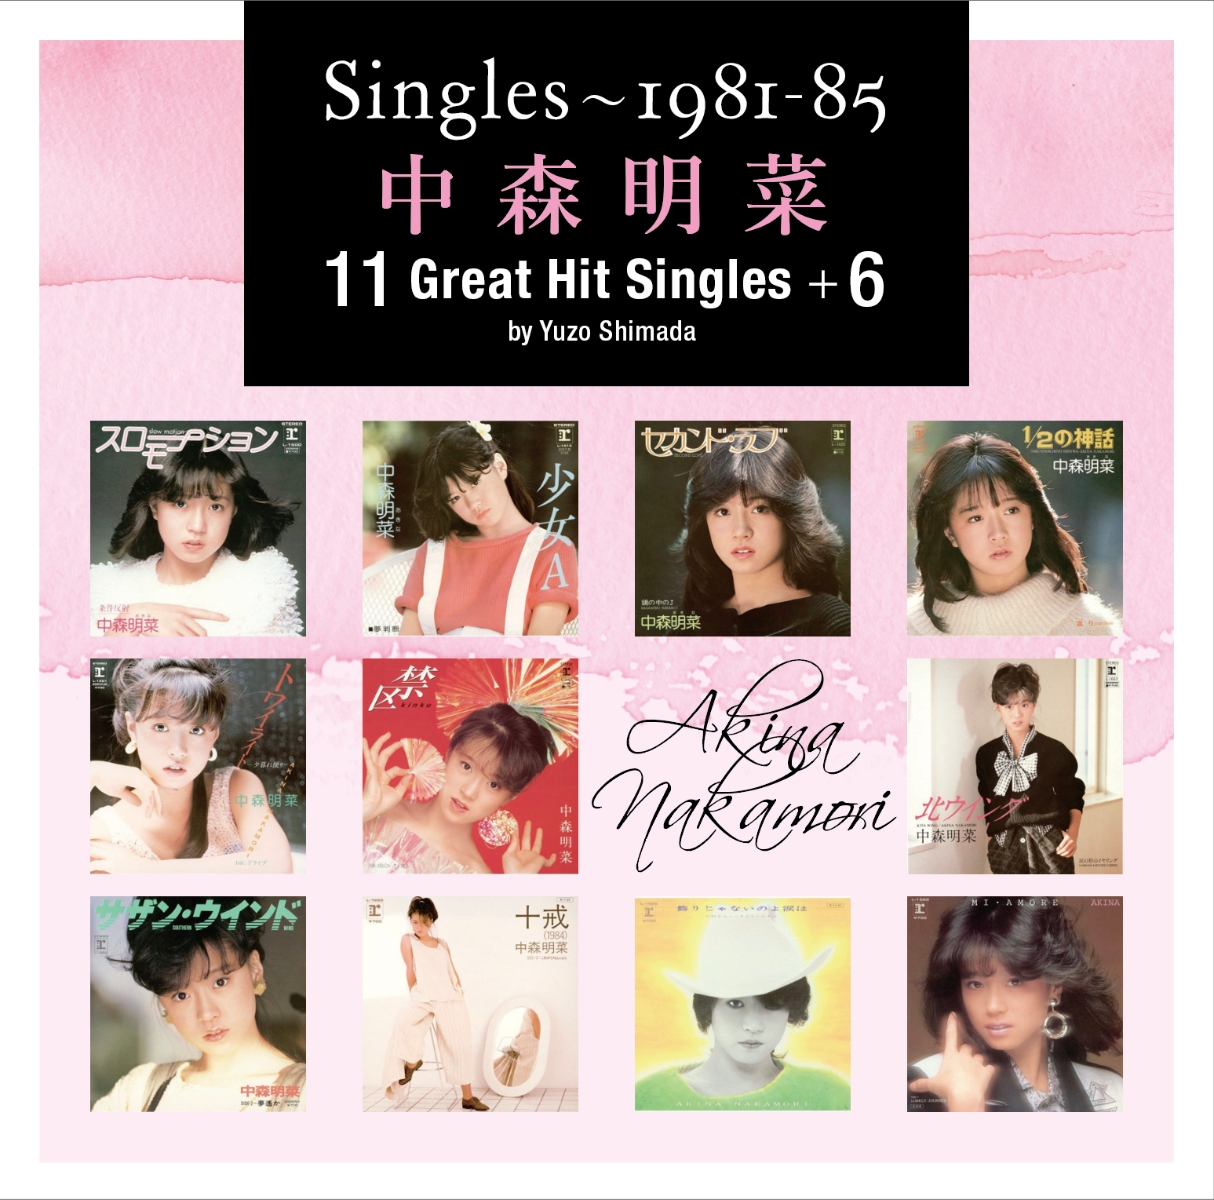 【先着特典】Singles～1981-85 中森明菜11 Great Hit Singles +6 by Yuzo  Shimada(オリジナル・クリアファイル(A4サイズ))